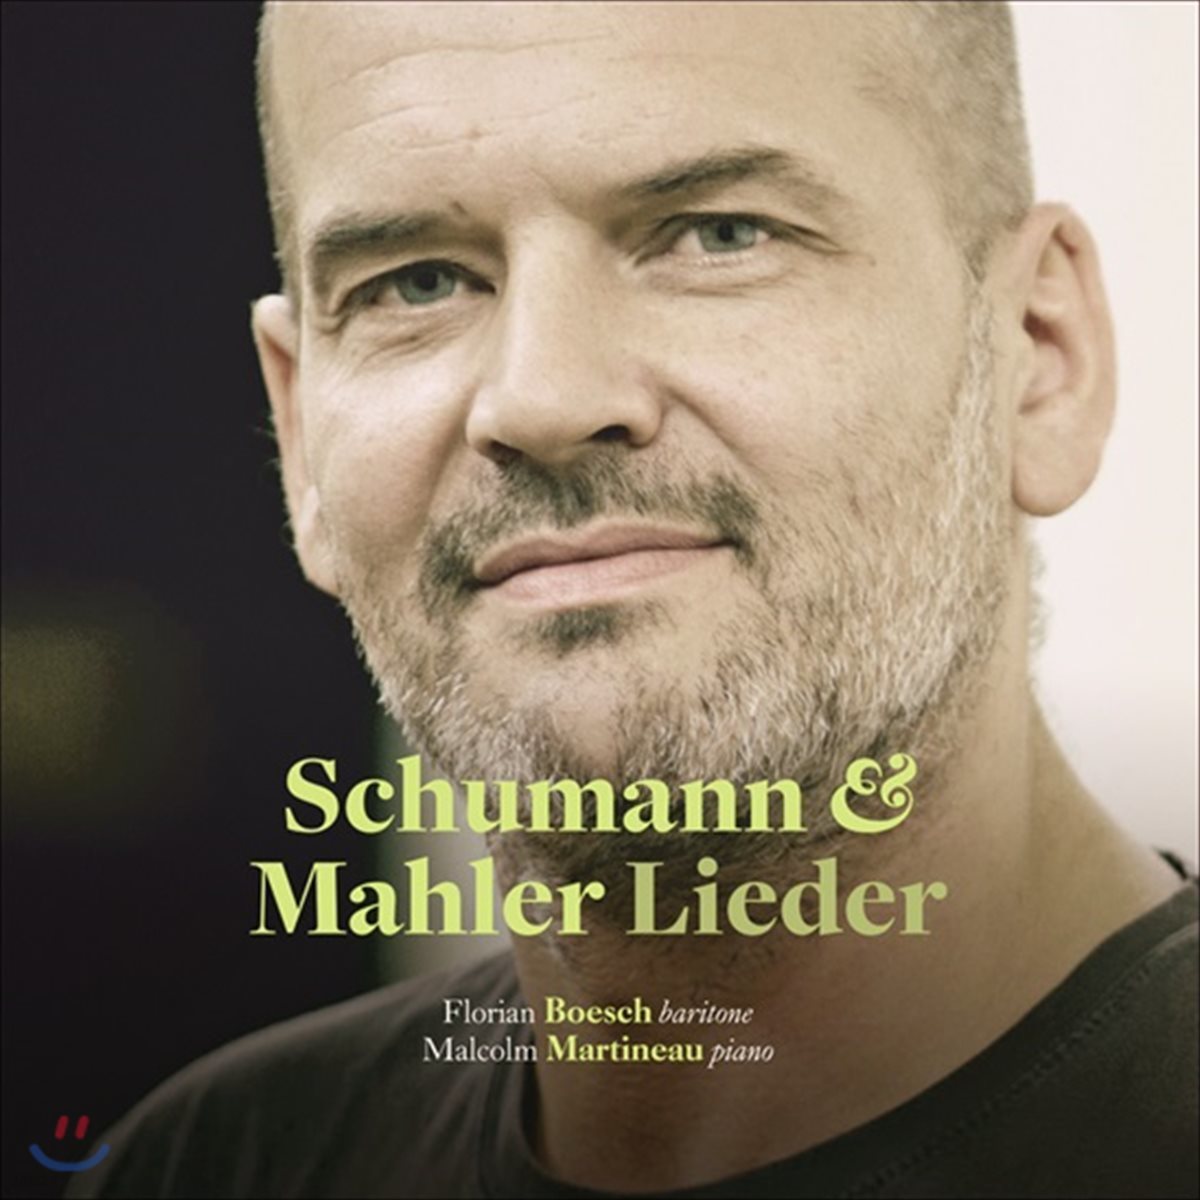 Florian Boesch 슈만 / 말러: 가곡집 - 플로리안 뵈슈, 말콤 마르티노 (Schumann &amp; Mahler: Lieder)